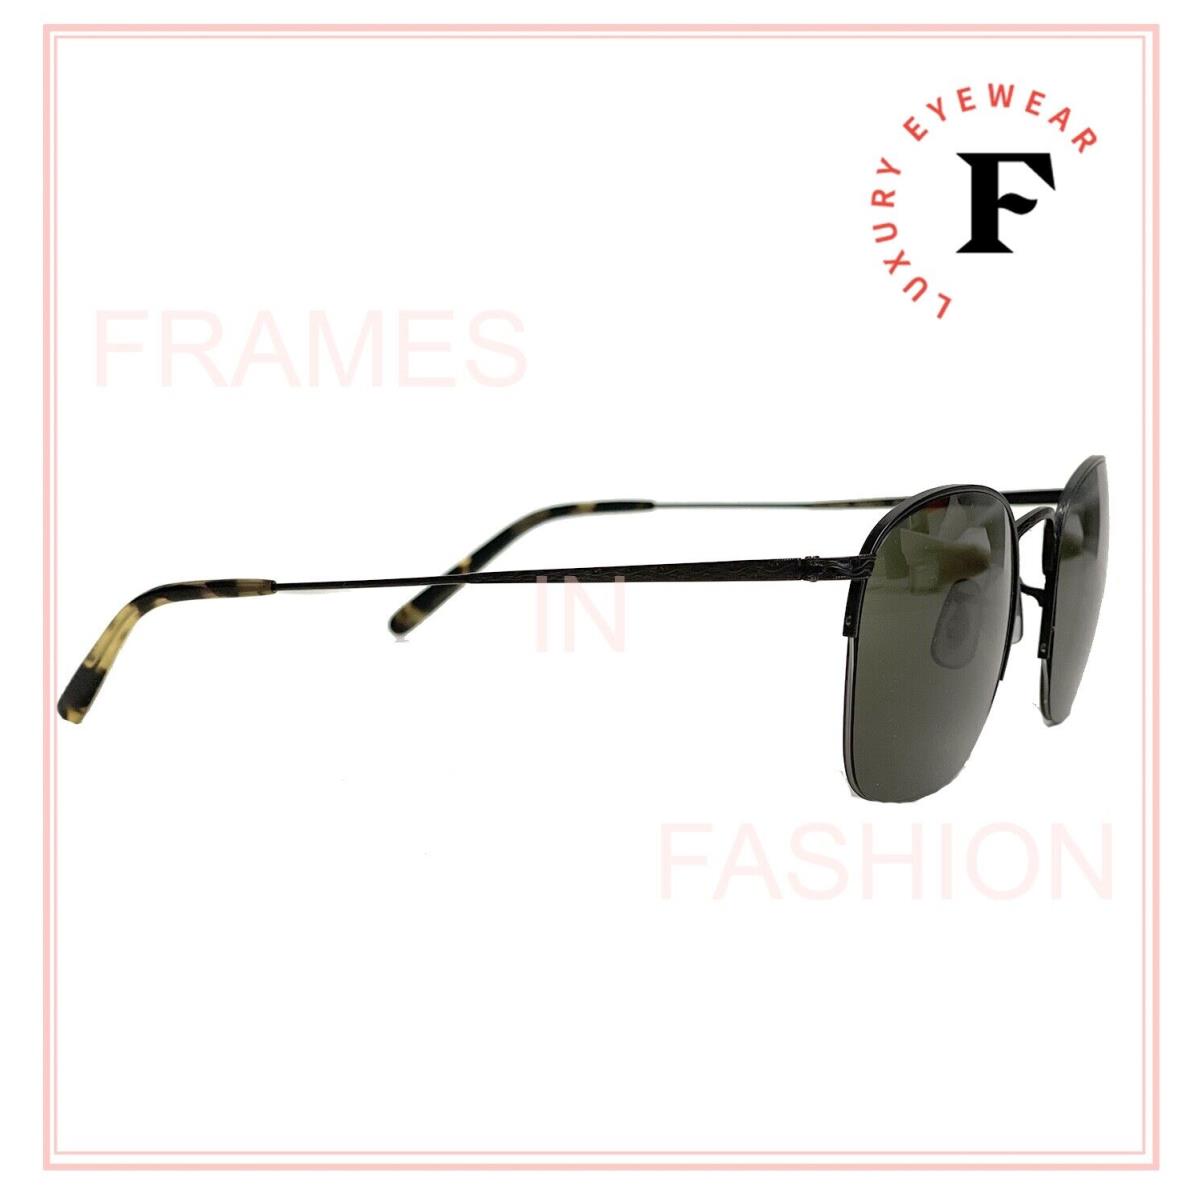 Oliver Peoples Rickman OV1209S 51mm Matte Black G15 Unisex Metal Sunglasses  1209 | 083643655387 - Oliver Peoples sunglasses RICKMAN - 5062/71 , Black  Frame, Gray Lens | Fash Direct